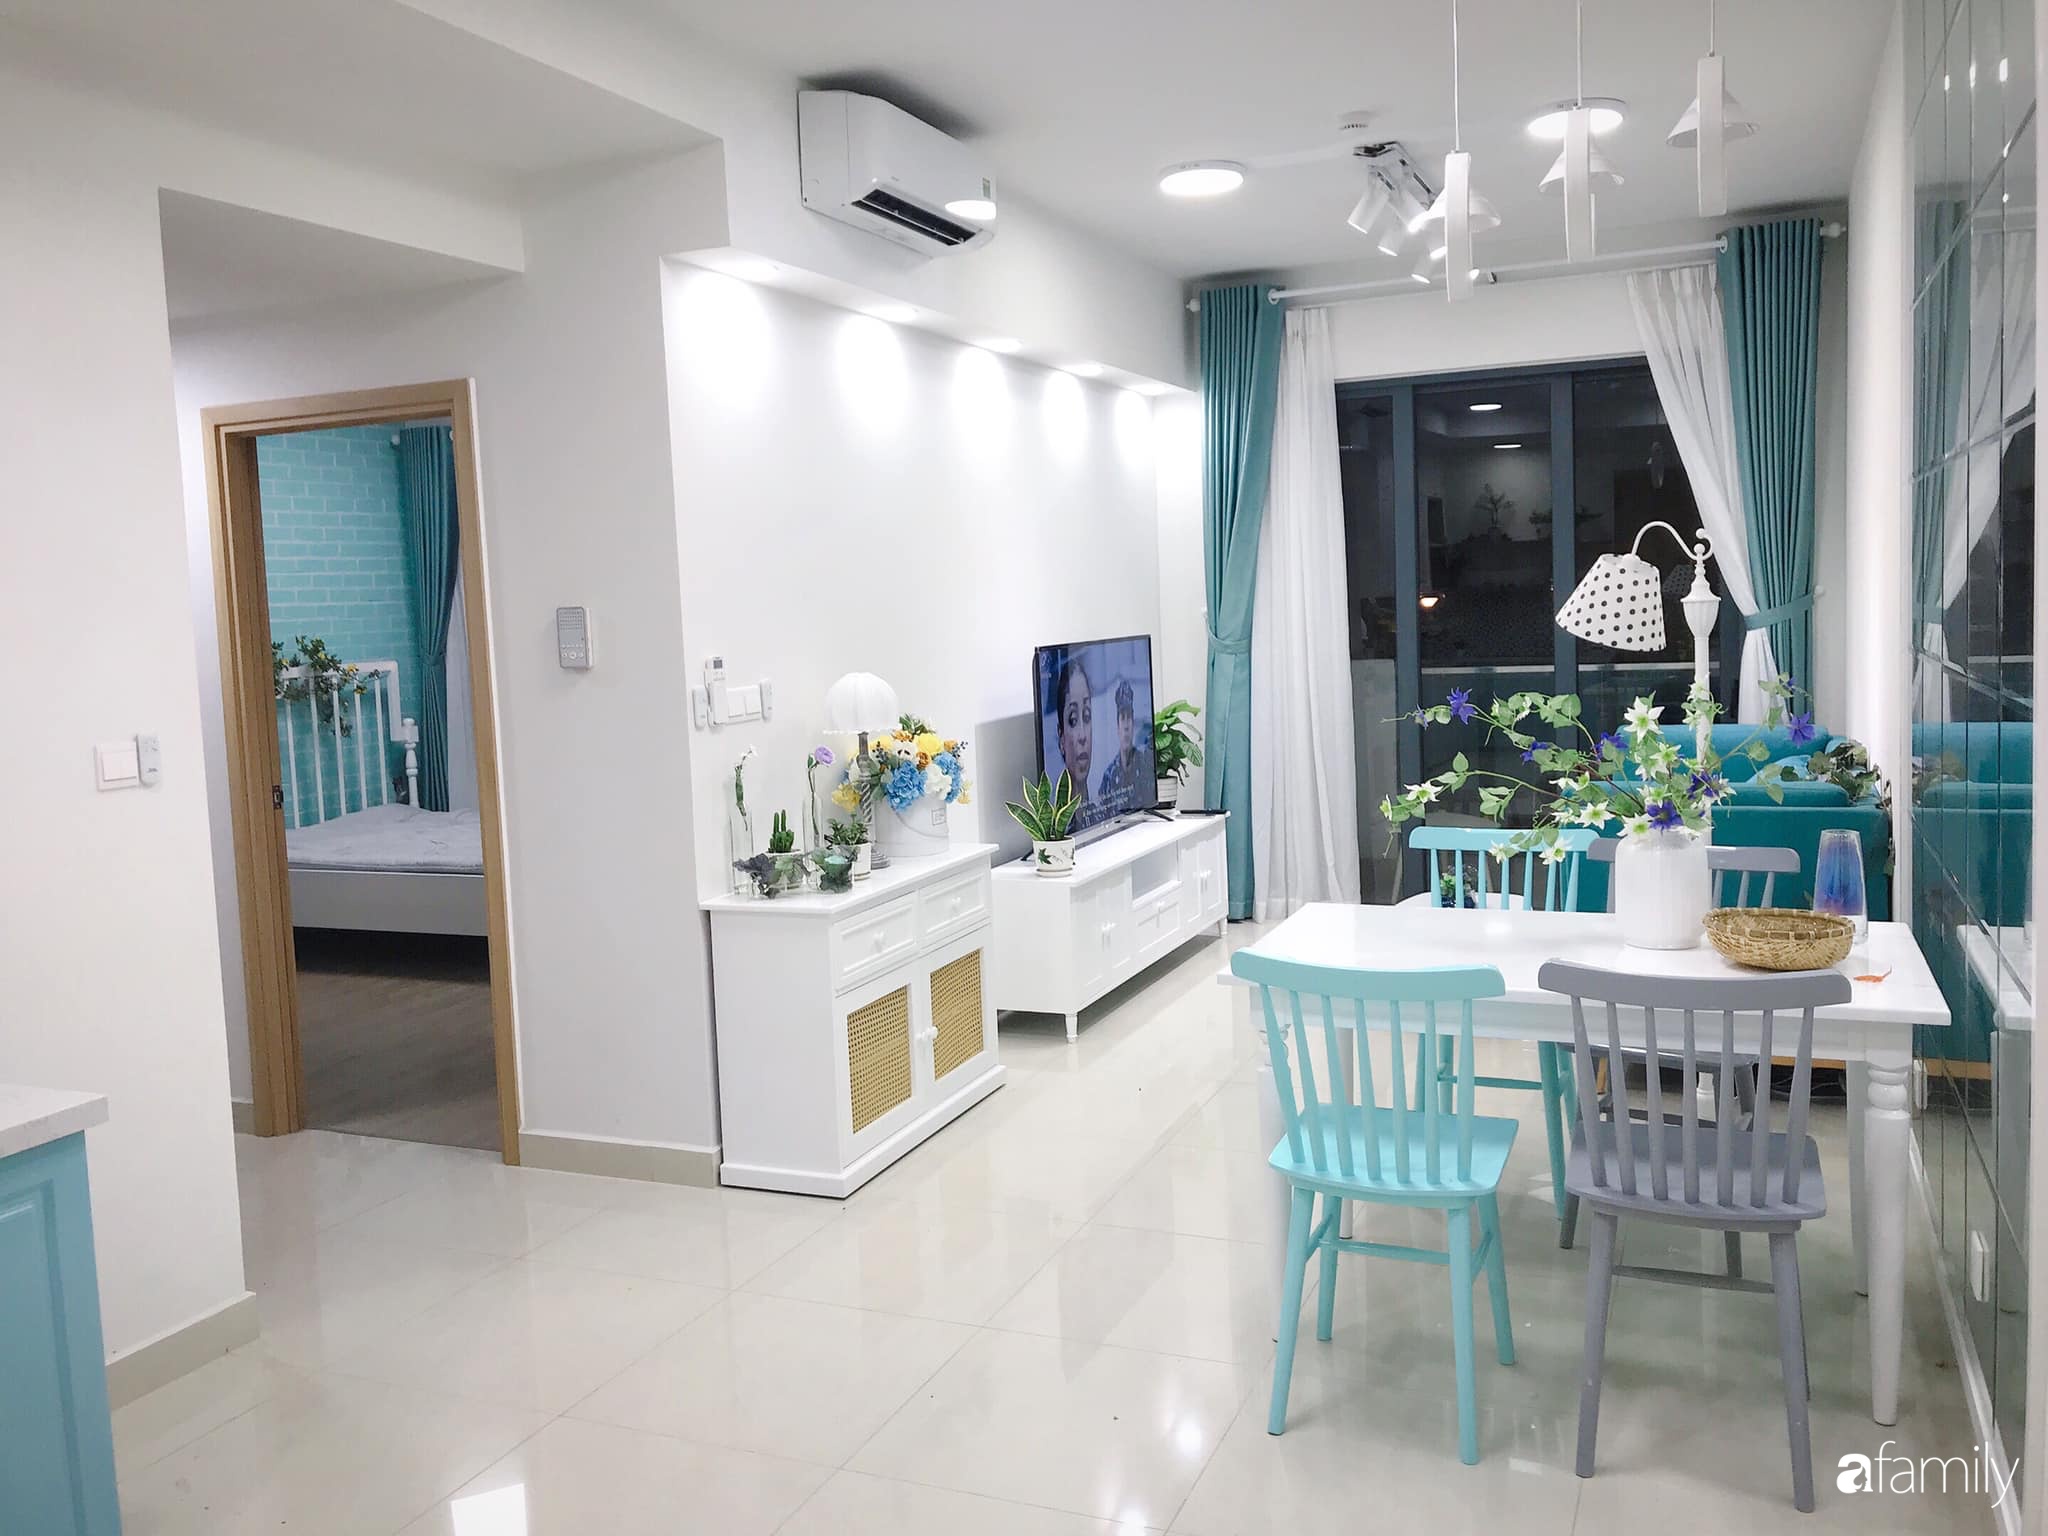 Căn hộ 71m² đẹp nhẹ nhàng, xinh yêu với điểm nhấn màu xanh bạc hà có chi phí hoàn thiện 200 triệu đồng ở Sài Gòn - Ảnh 4.